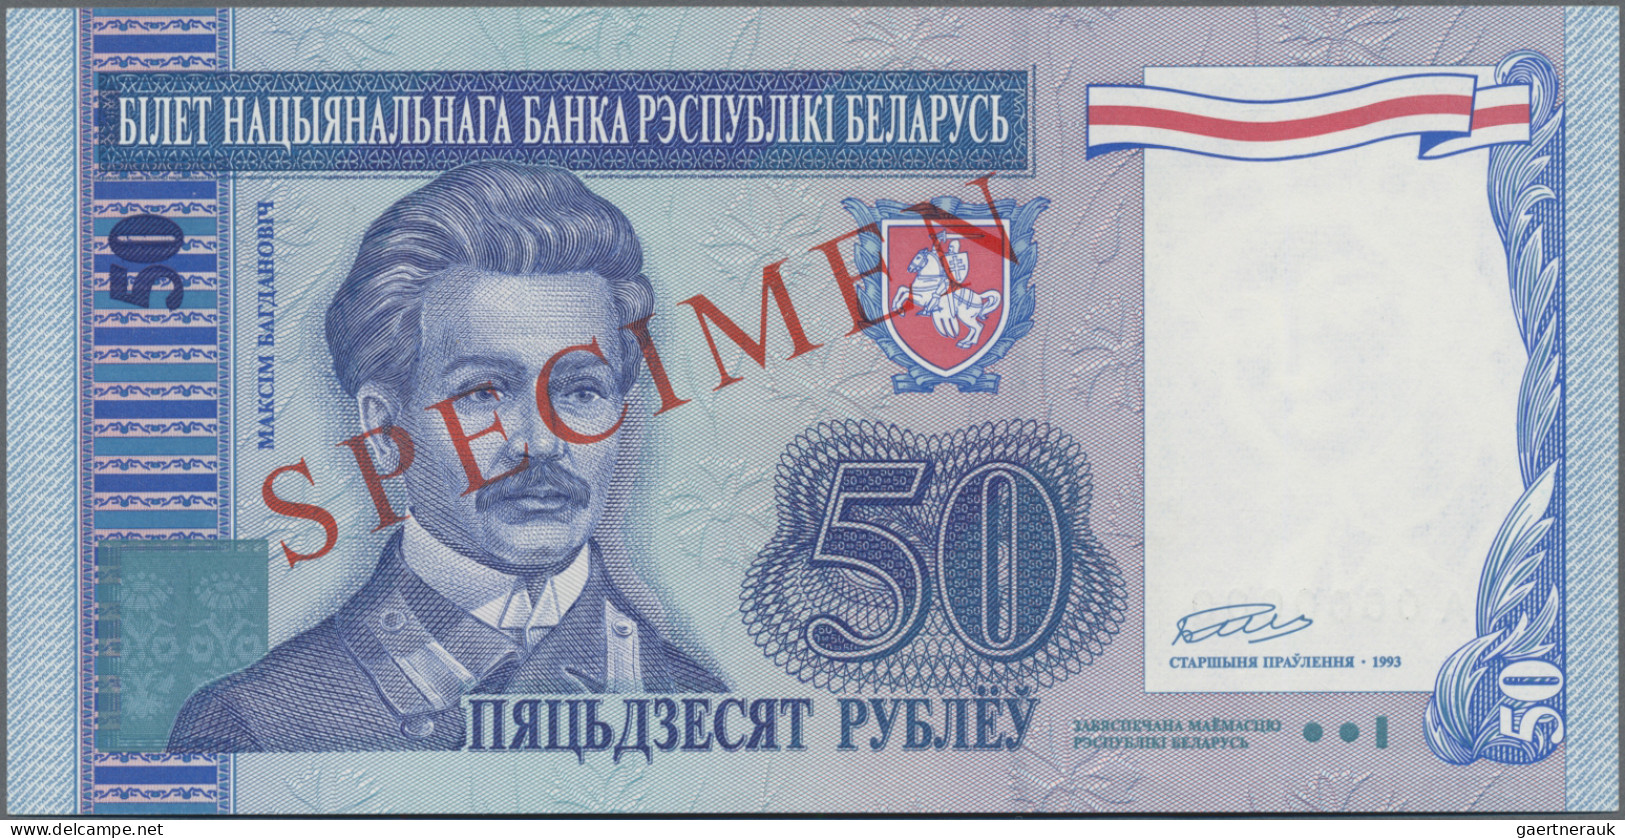 Belarus: National Bank of Belarus, set with 6 unissued SPECIMEN 1, 5, 10, 20, 50